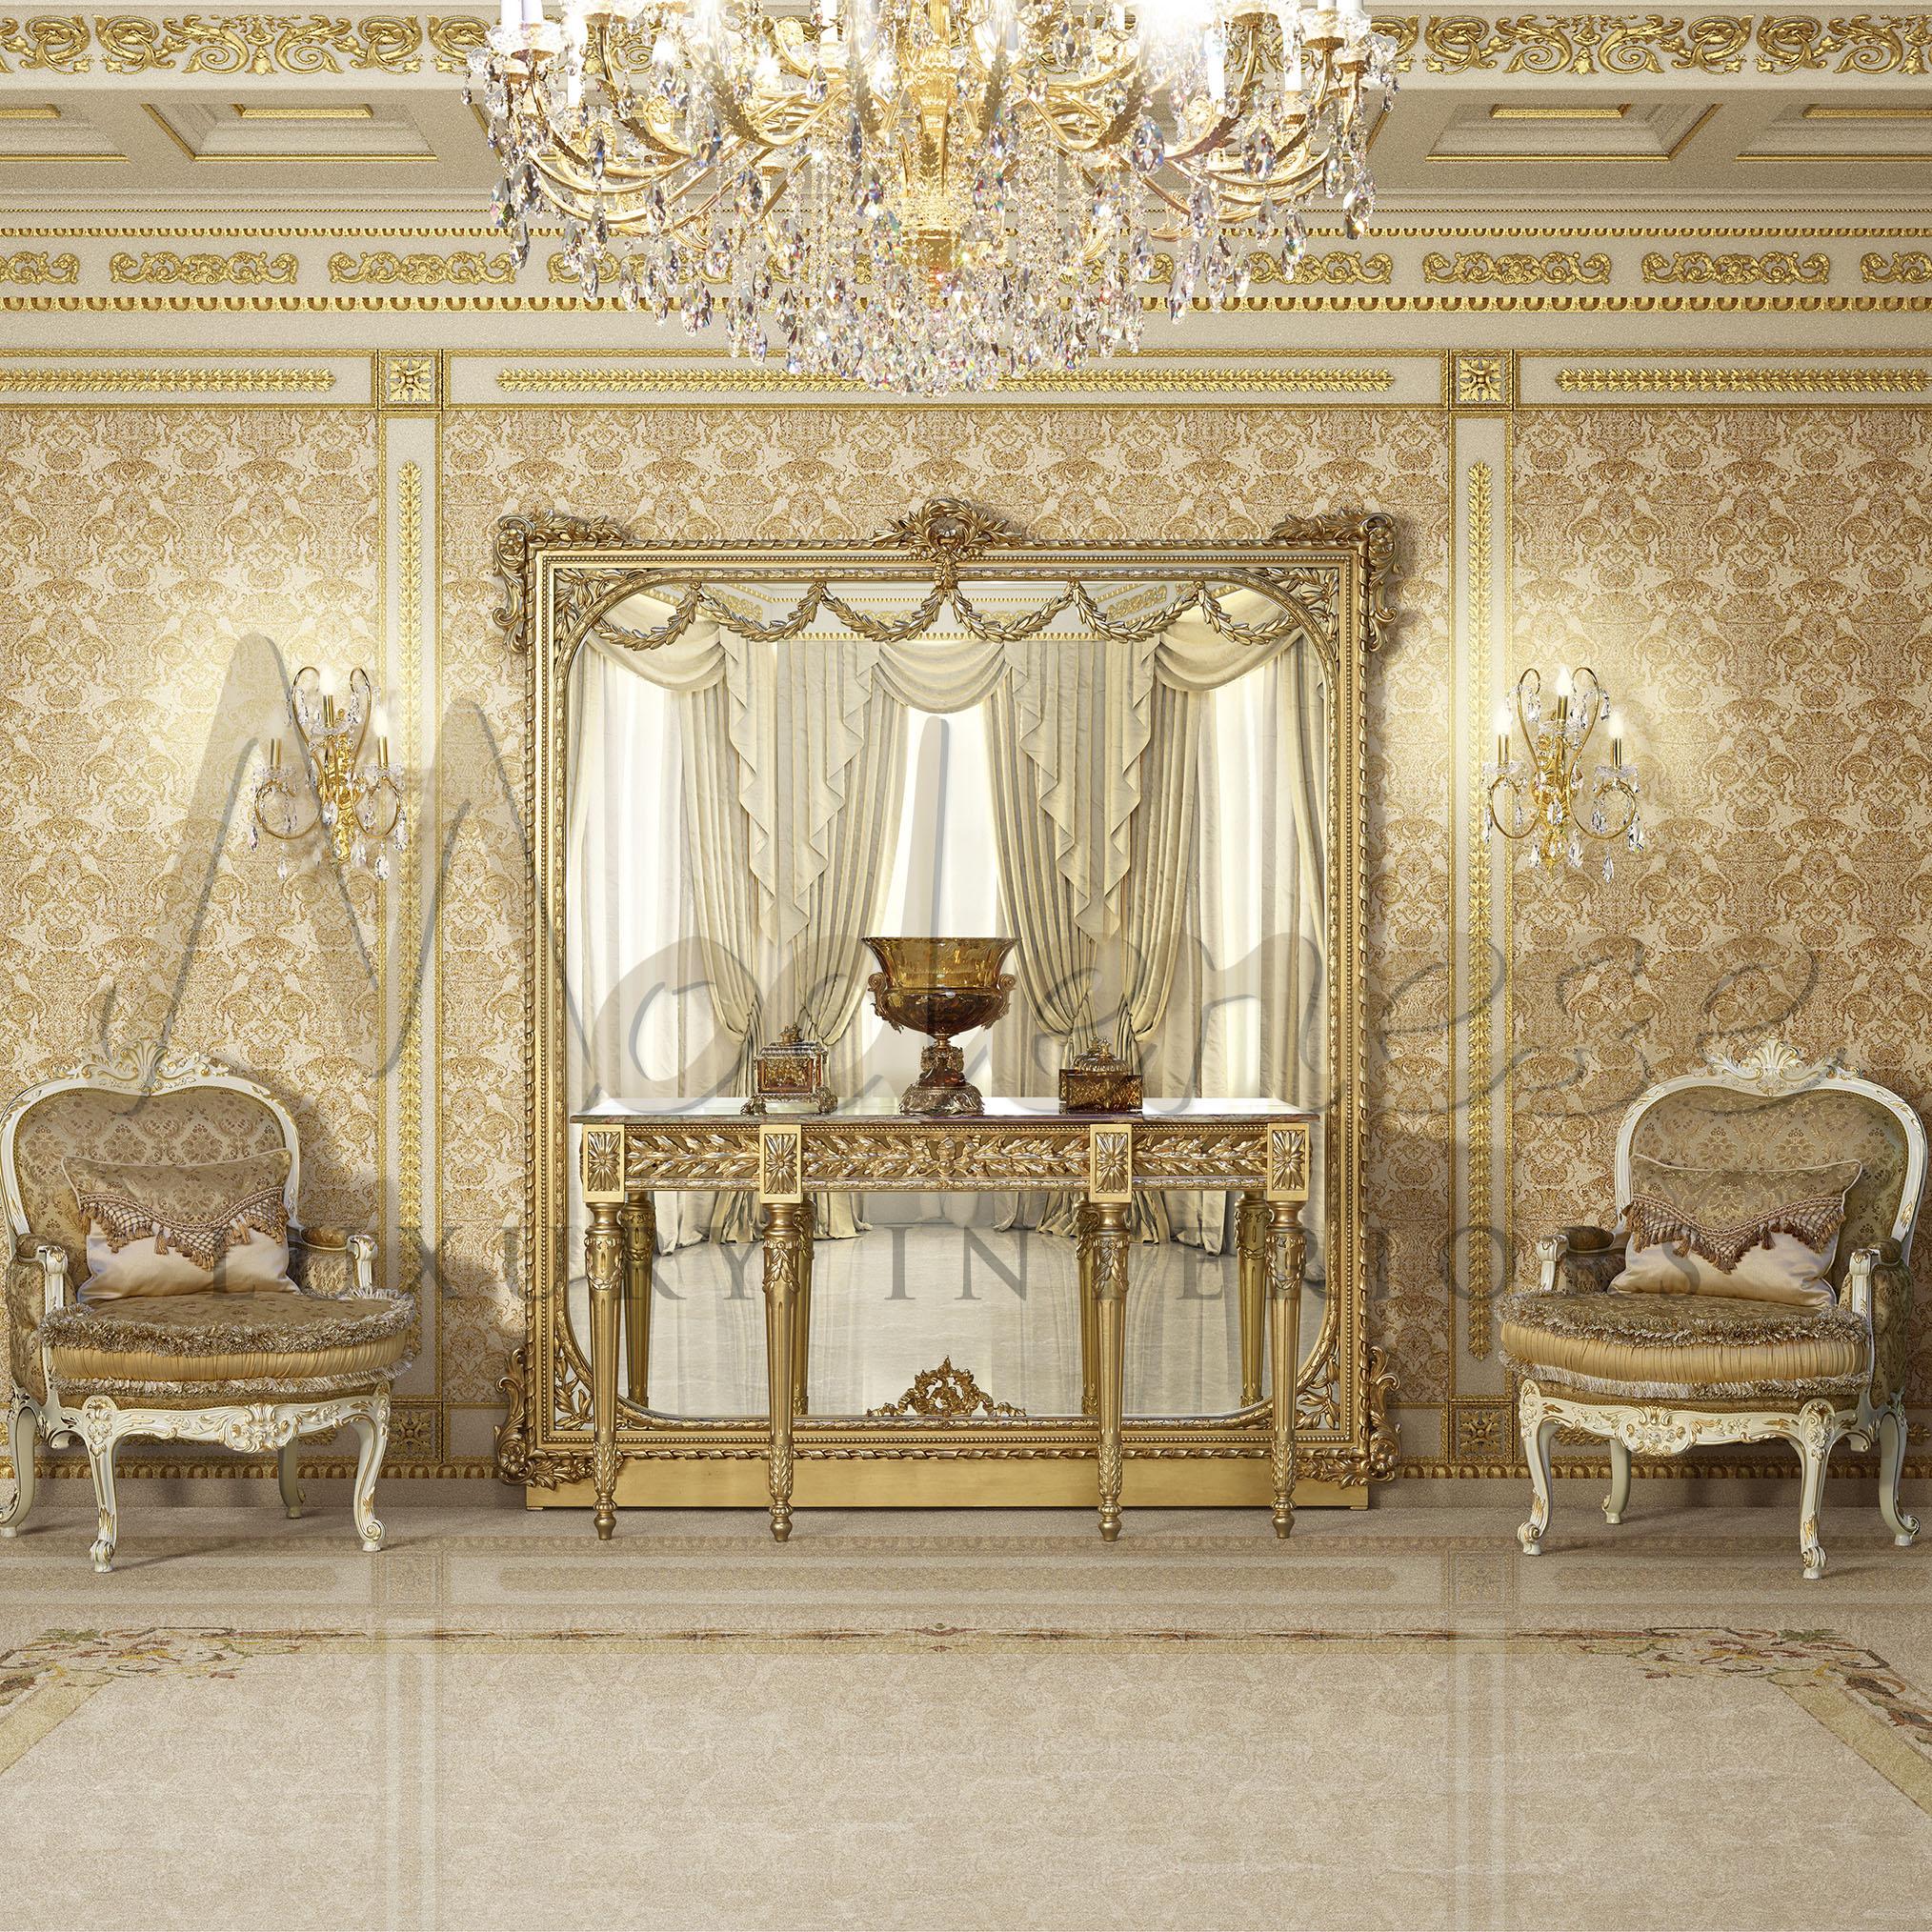 Wohnzimmerkonsole mit vollständig blattvergoldeter Struktur und pakistanischem grünem Onyx, hergestellt von Modenese Gastone Interiors. Die vier Beine im Empire-Stil mit geschnitzten Lorbeerblättern haben eine schlanke und elegante Form, die dennoch